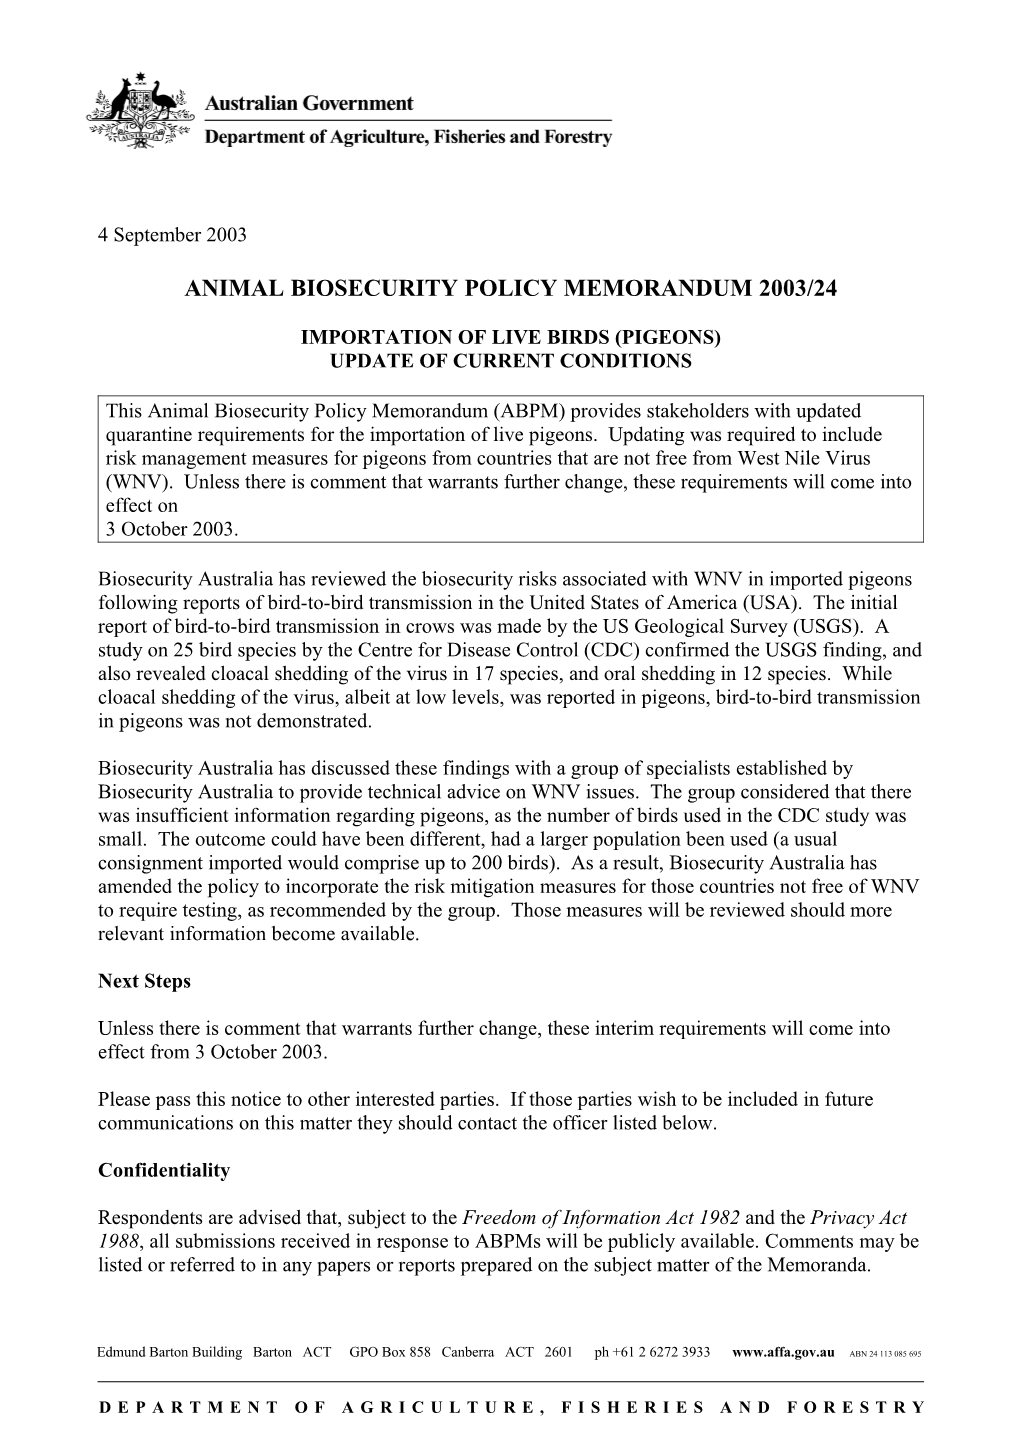 Animal Biosecurity Policy Memorandum 2003/24